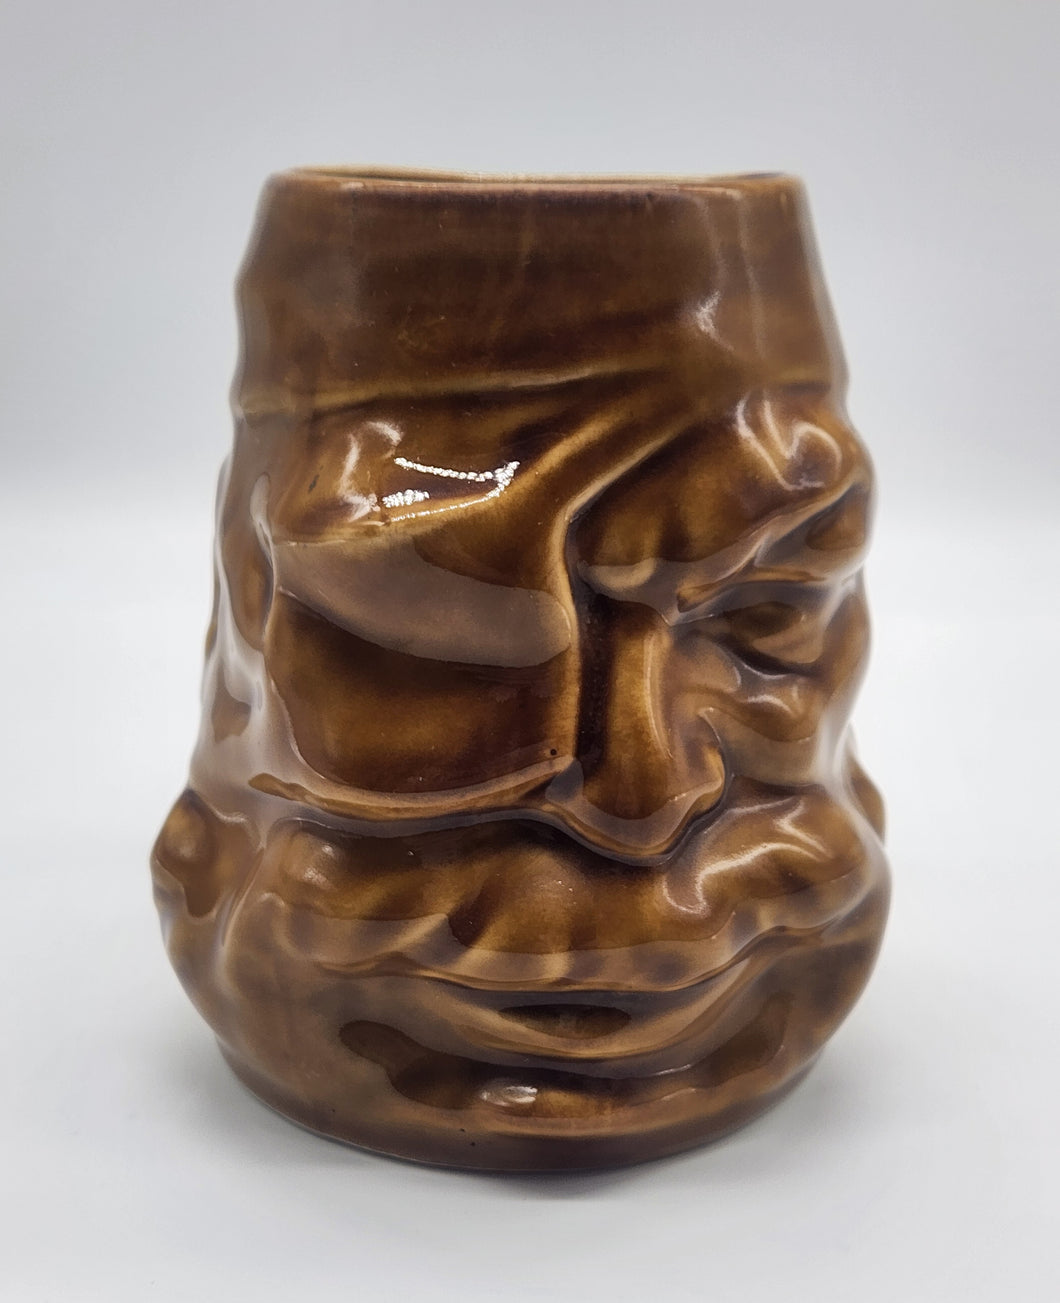 Pirate Head Ceramic Tiki Mug With Handle Oversized Glazed Light Brown Isla De Pinos